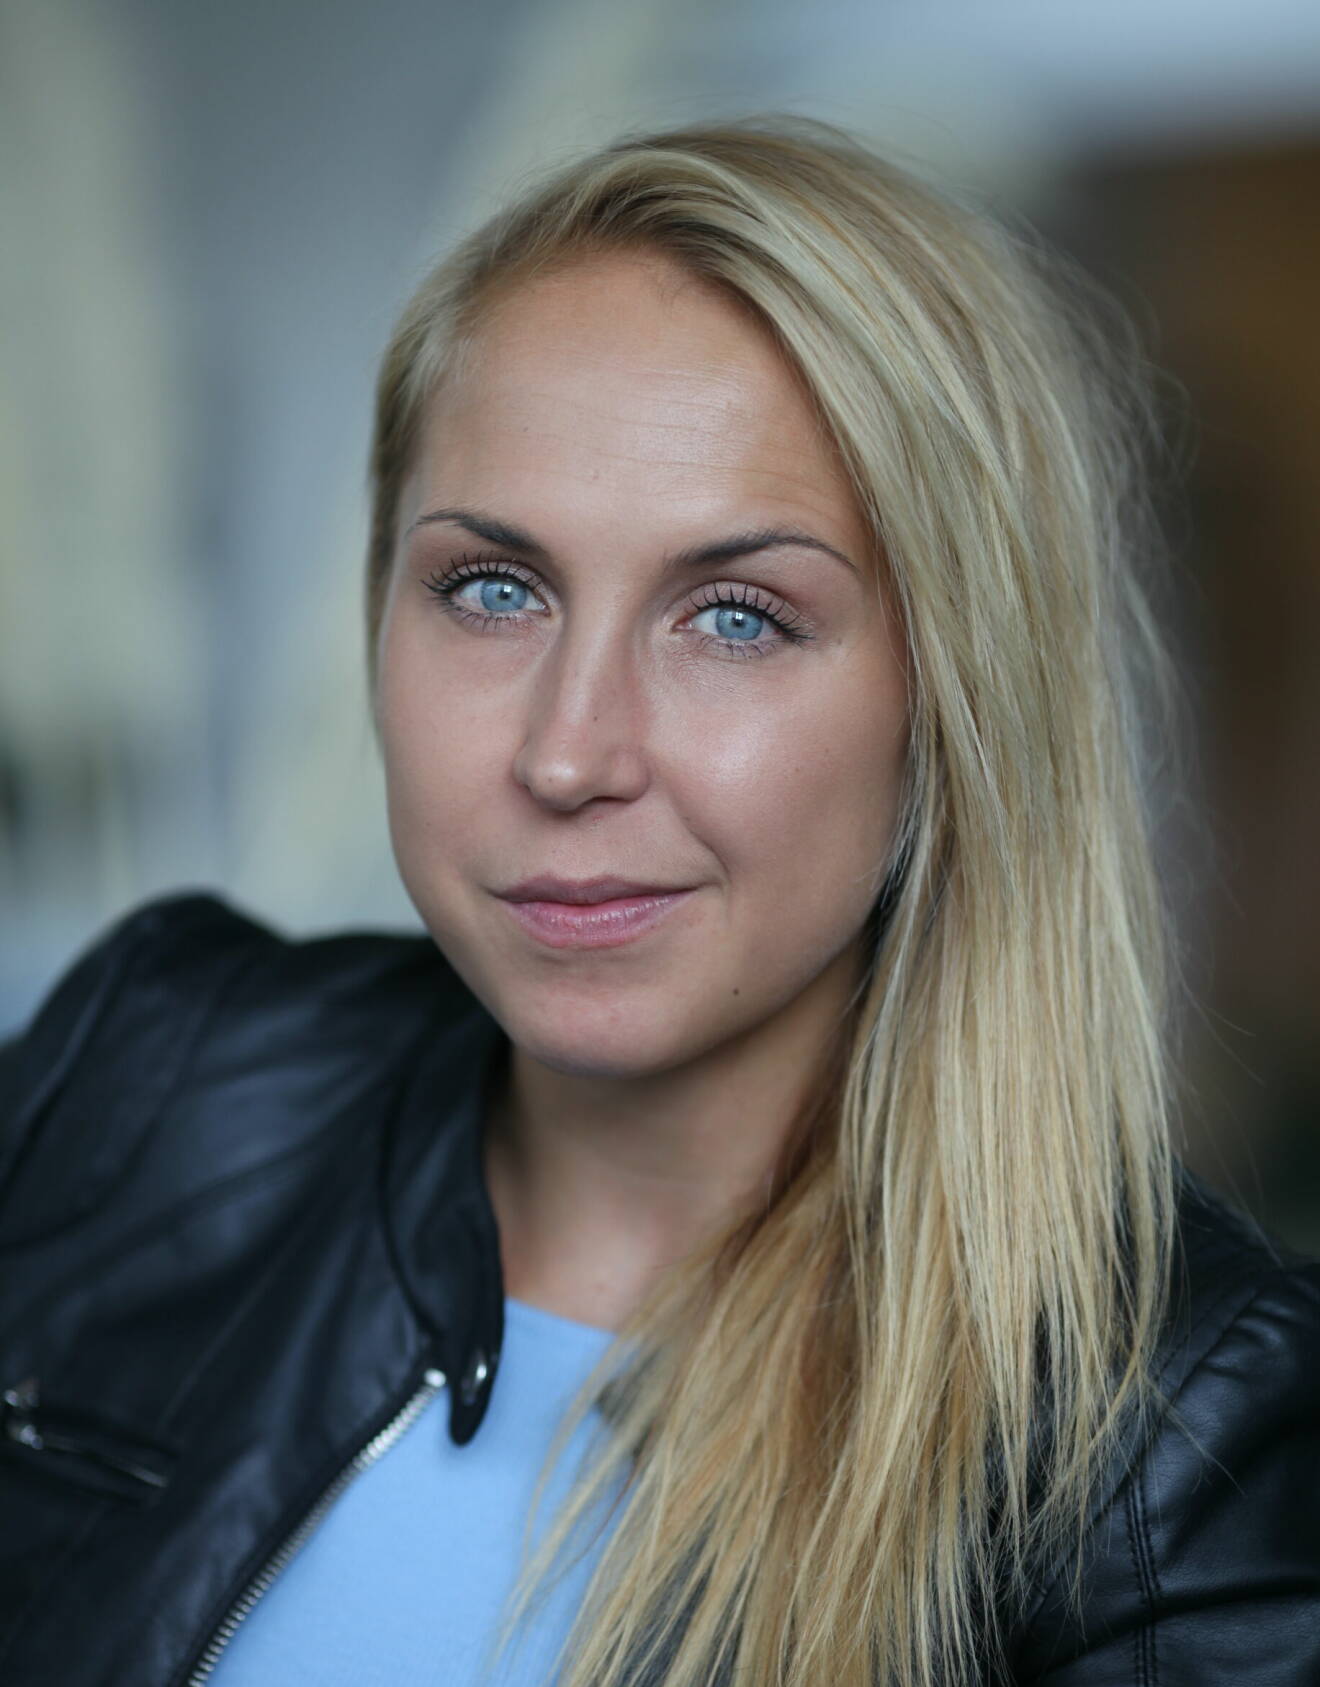 Elin Härkönen siktade mot VM i voltige när hon bröt nacken. Hon kämpade sig upp till en karriär som elitidrottare när nästa smäll kom – pojkvännen Paolo Roberto greps vid en bordellrazzia och dömdes för att ha köpt sex.